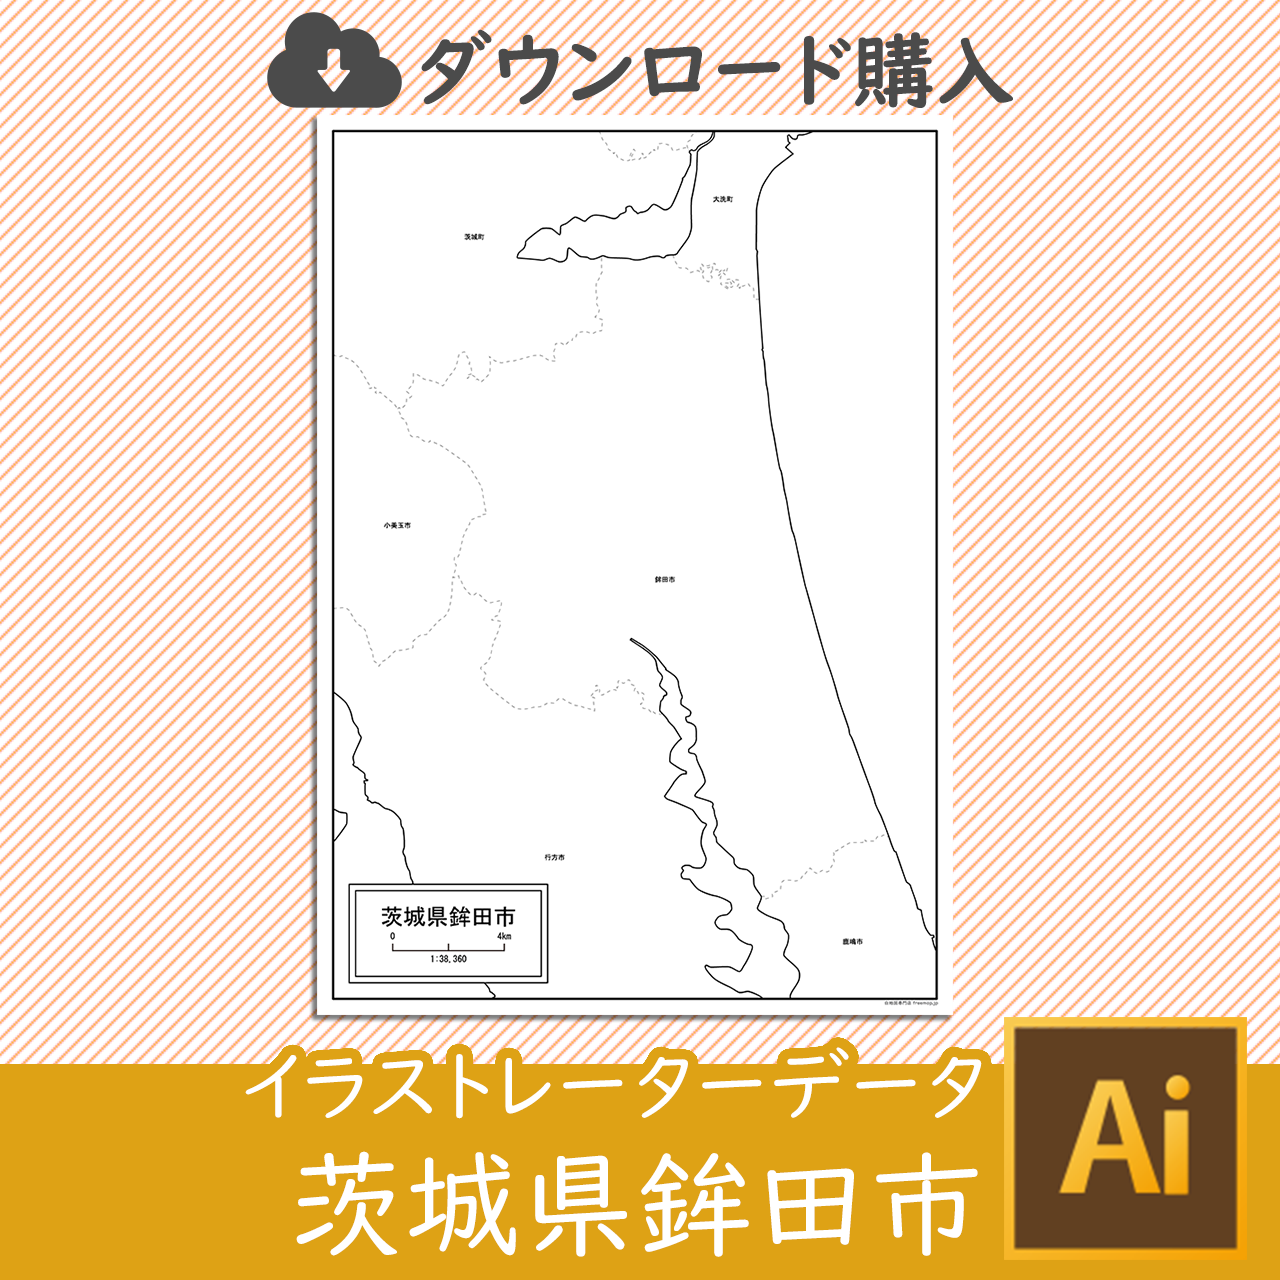 鉾田市のaiデータのサムネイル画像